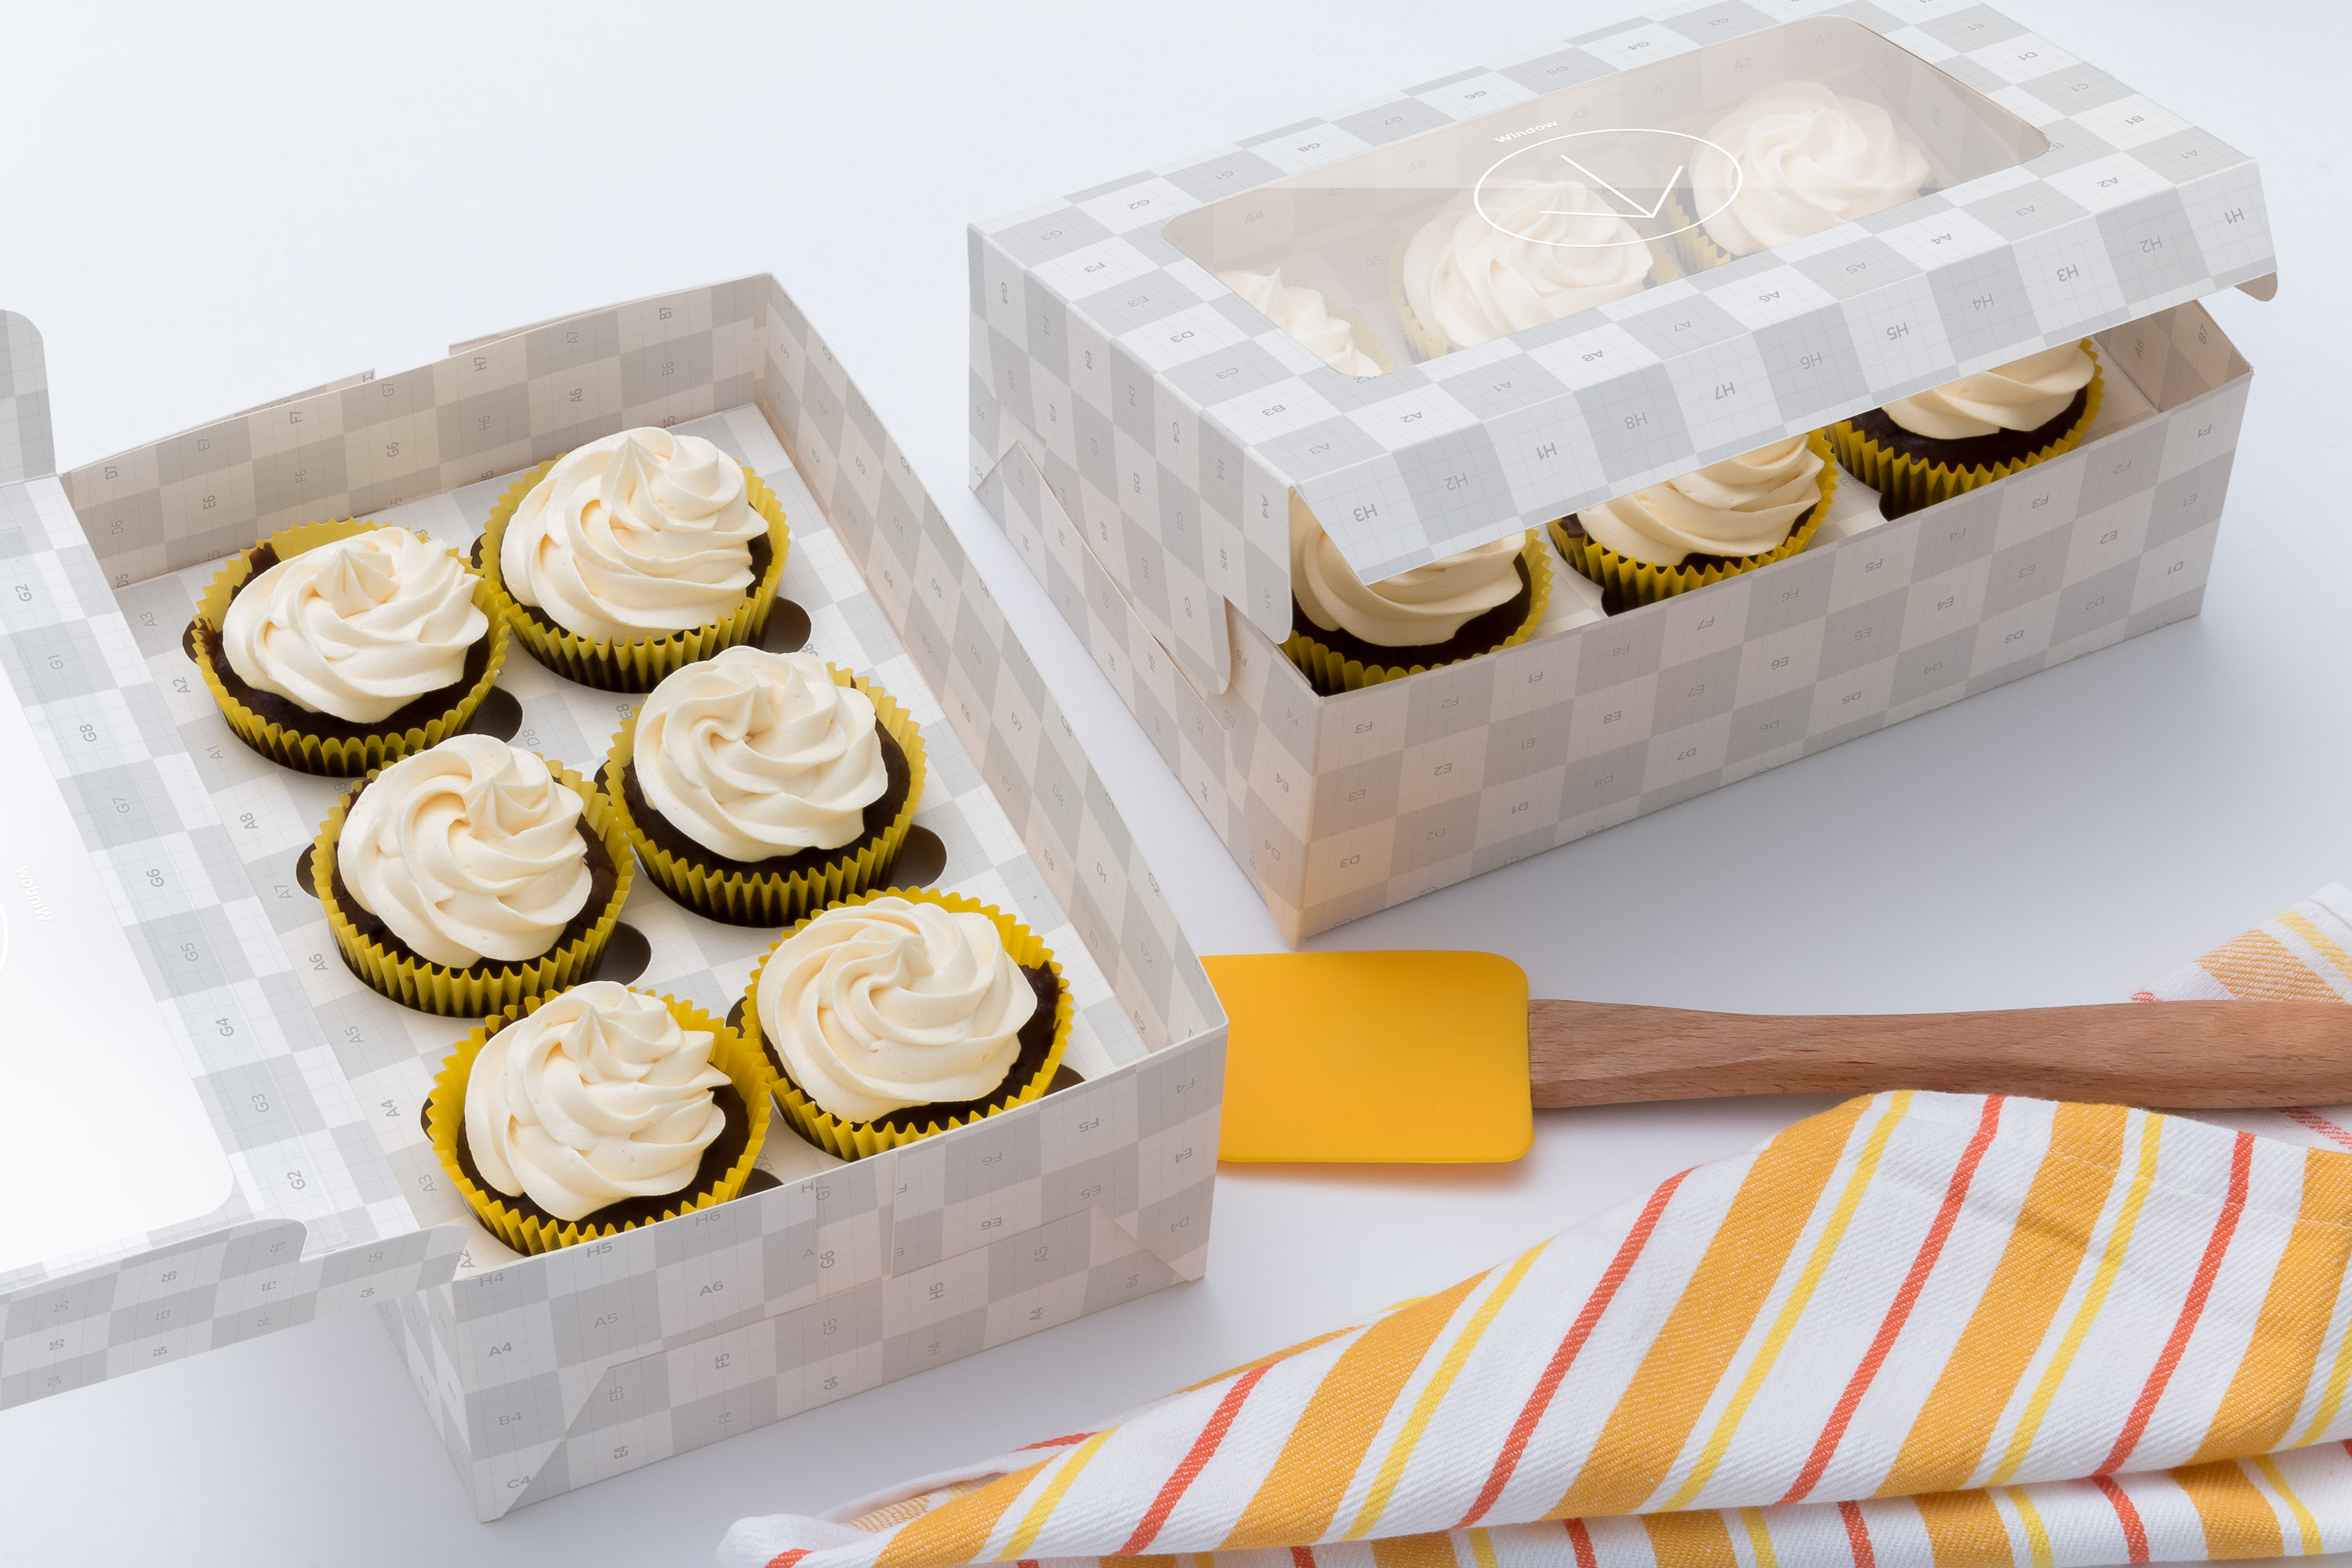 六只装纸杯蛋糕烘焙店包装盒设计效果图样机03 Six Cupcake Box Mockup 03插图(2)